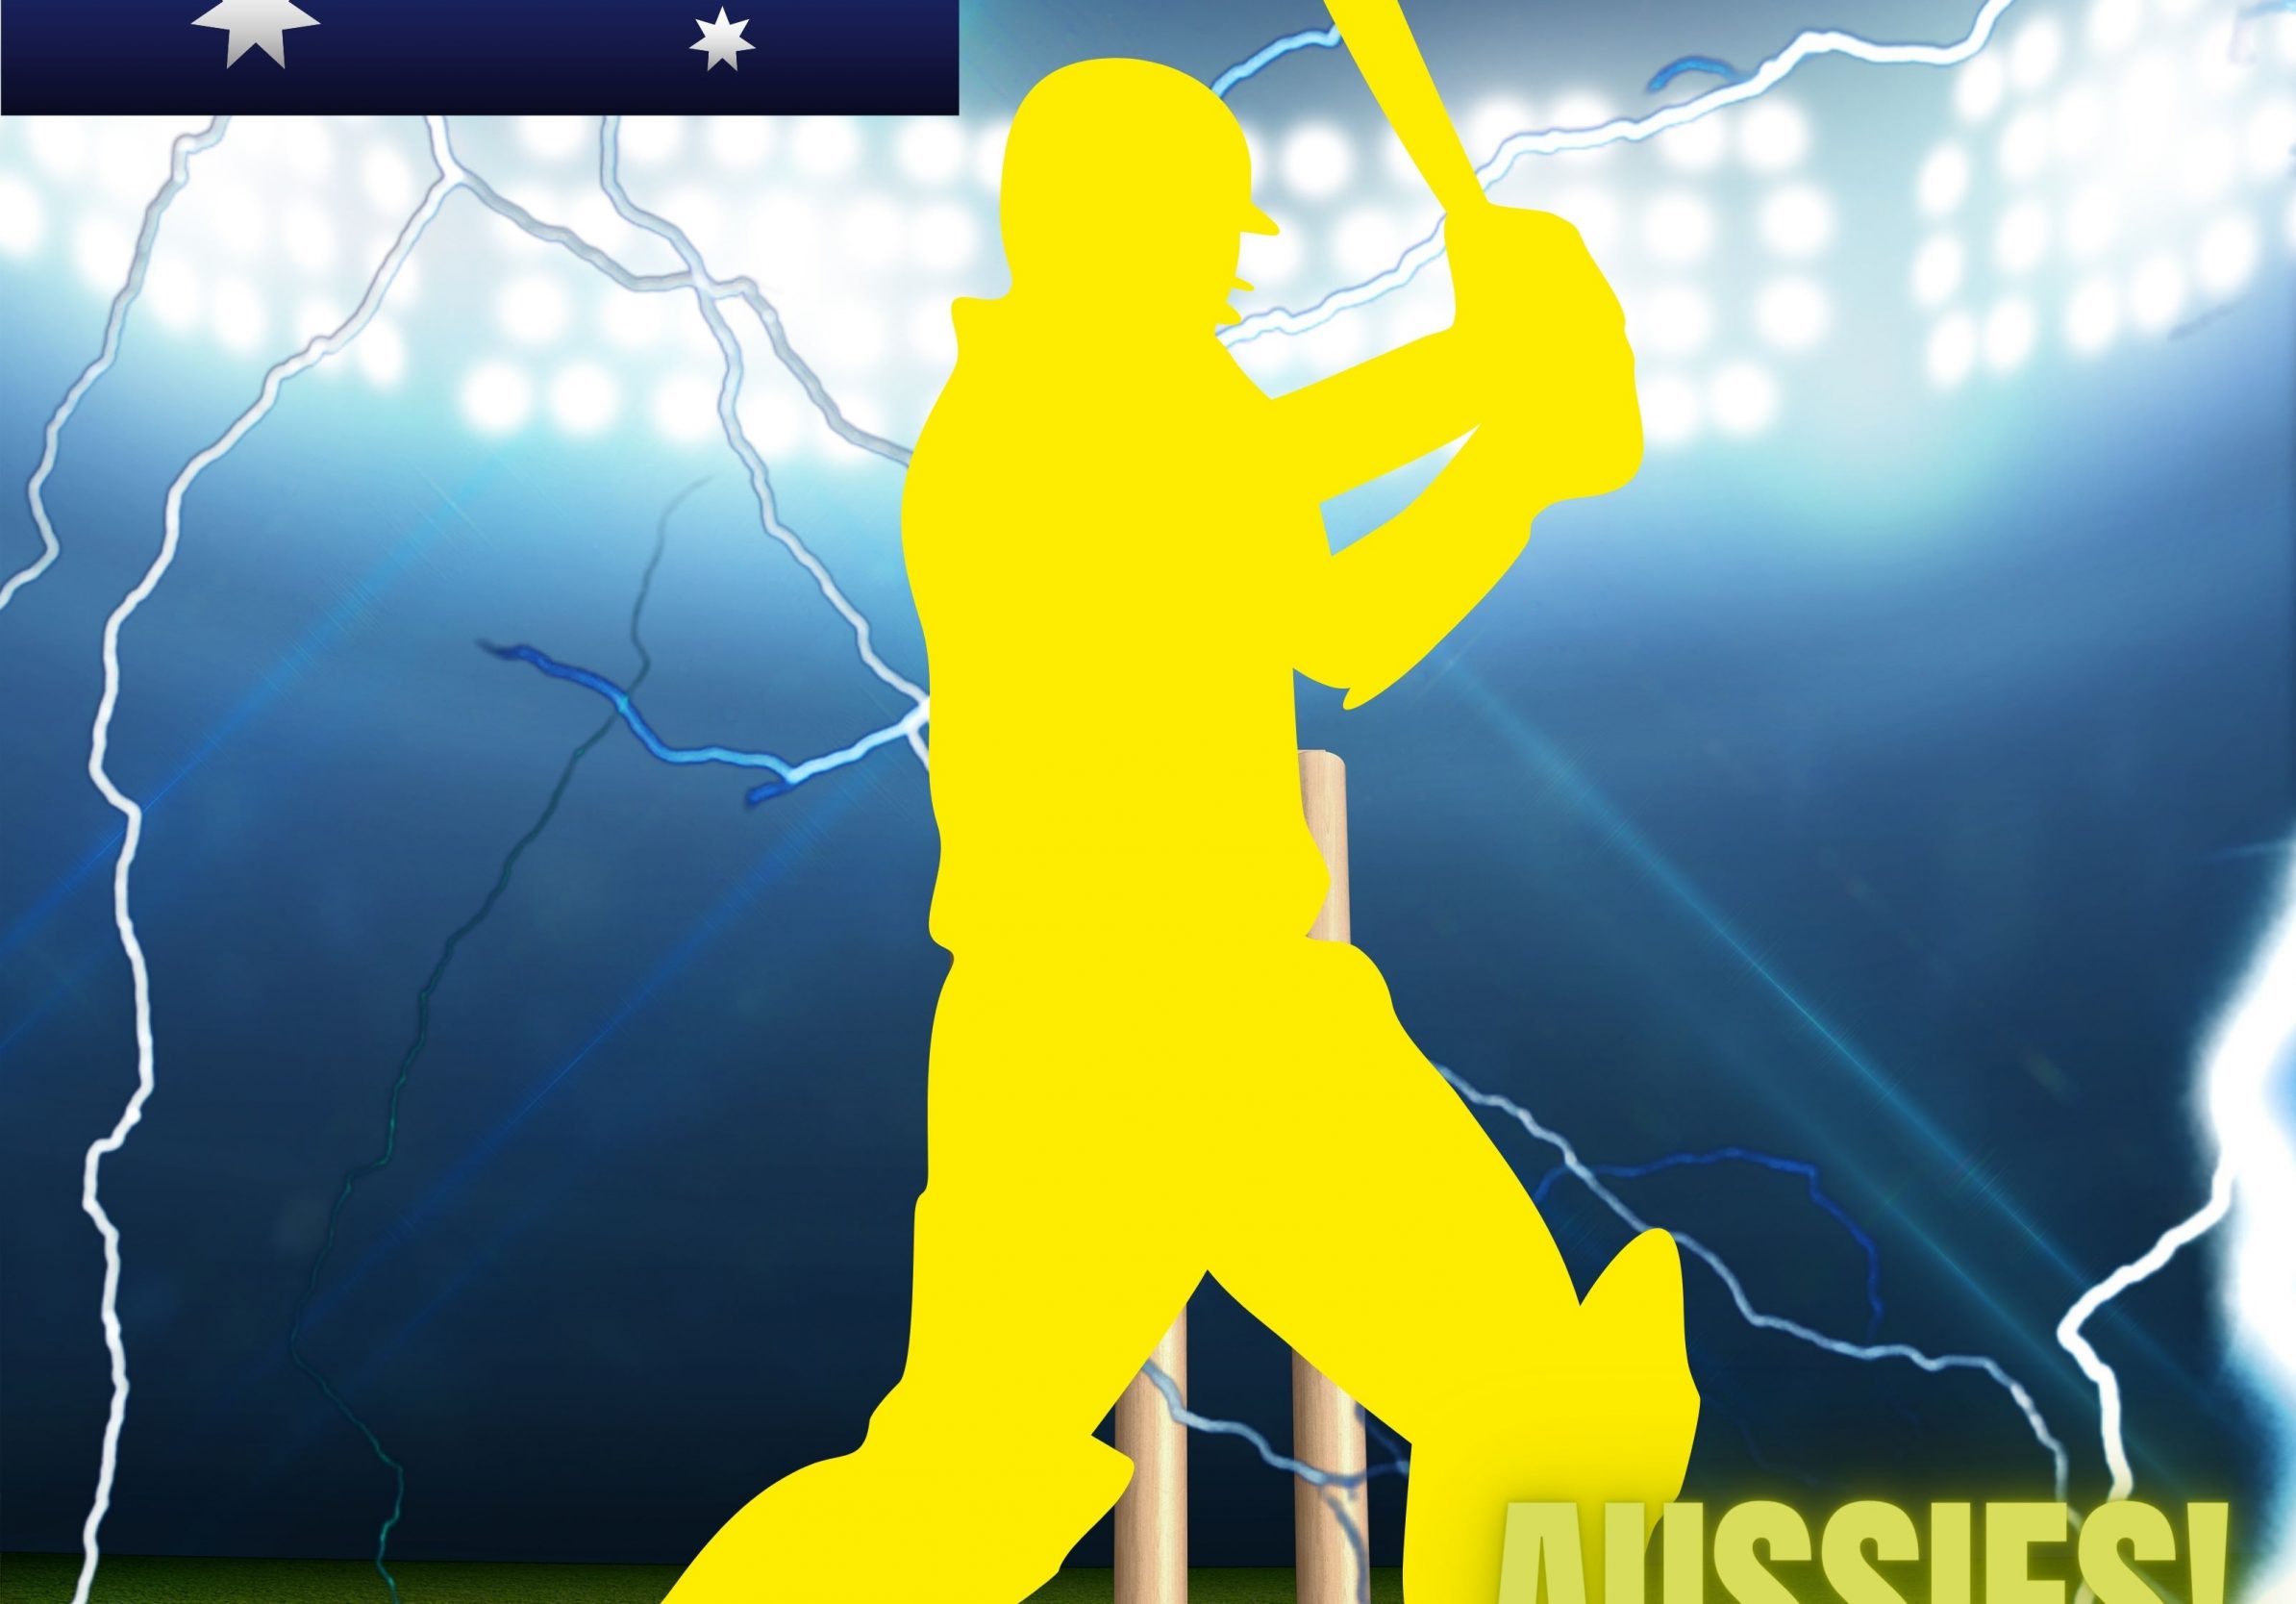 2388x1668 iPad Pro wallpapers Australia Cricket Stadium iPad Wallpaper 2388x1668 pixels resolution